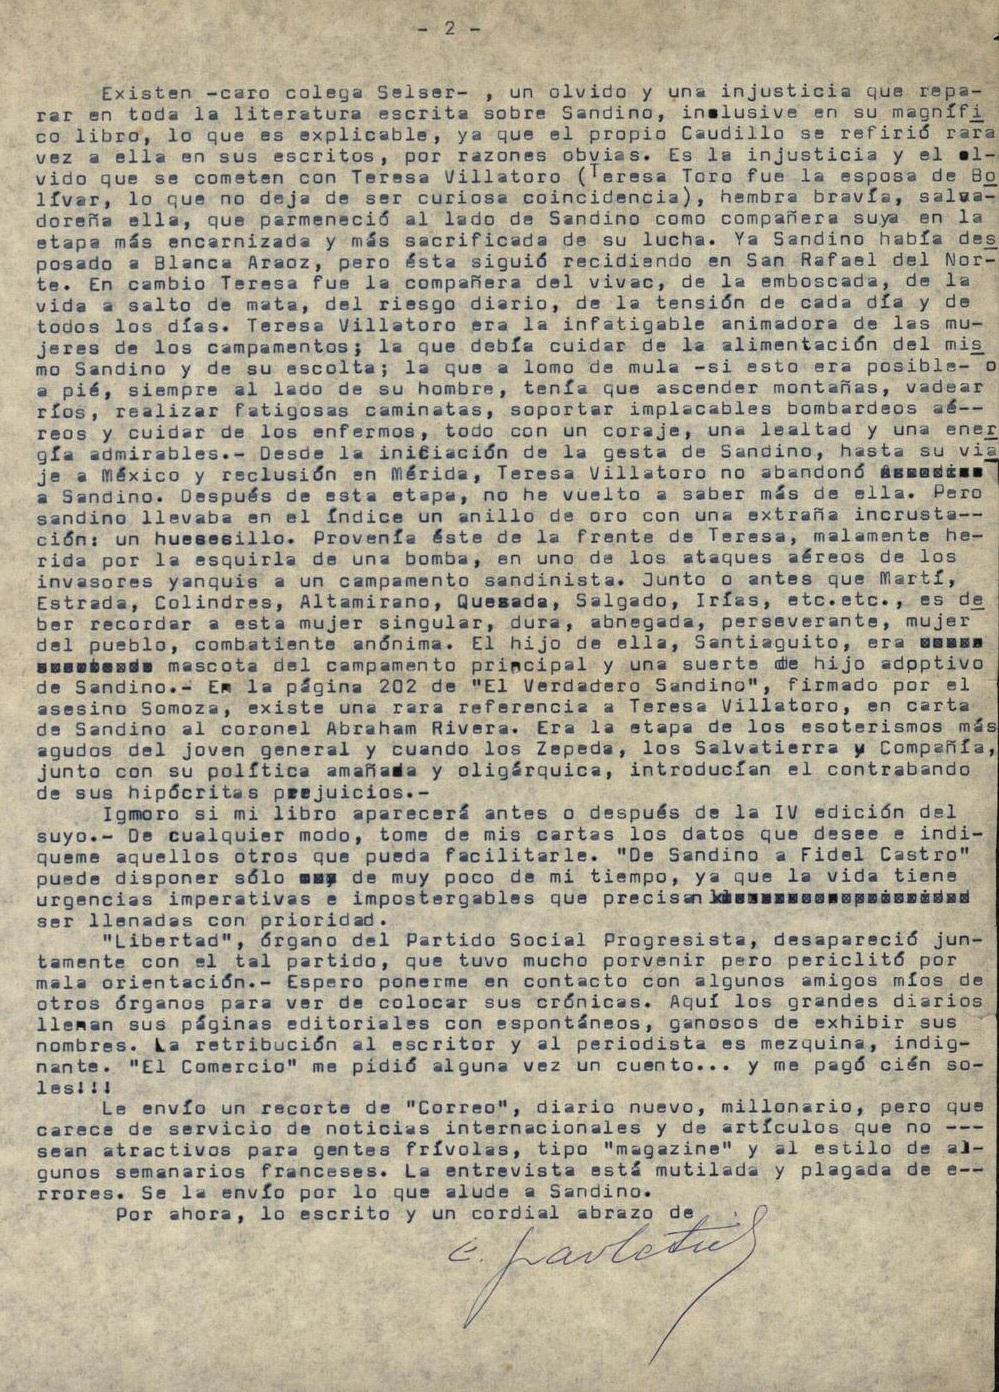 Segunda página de la carta de Esteban Pavletich a Gregorio Selser, 5 de agosto de 1963. Caja 3, B AC151, Documentos Personales de Gregorio Selser, Centro Académico de la Memoria de Nuestra América, Universidad Autónoma de la Ciudad de México, México, D.F.